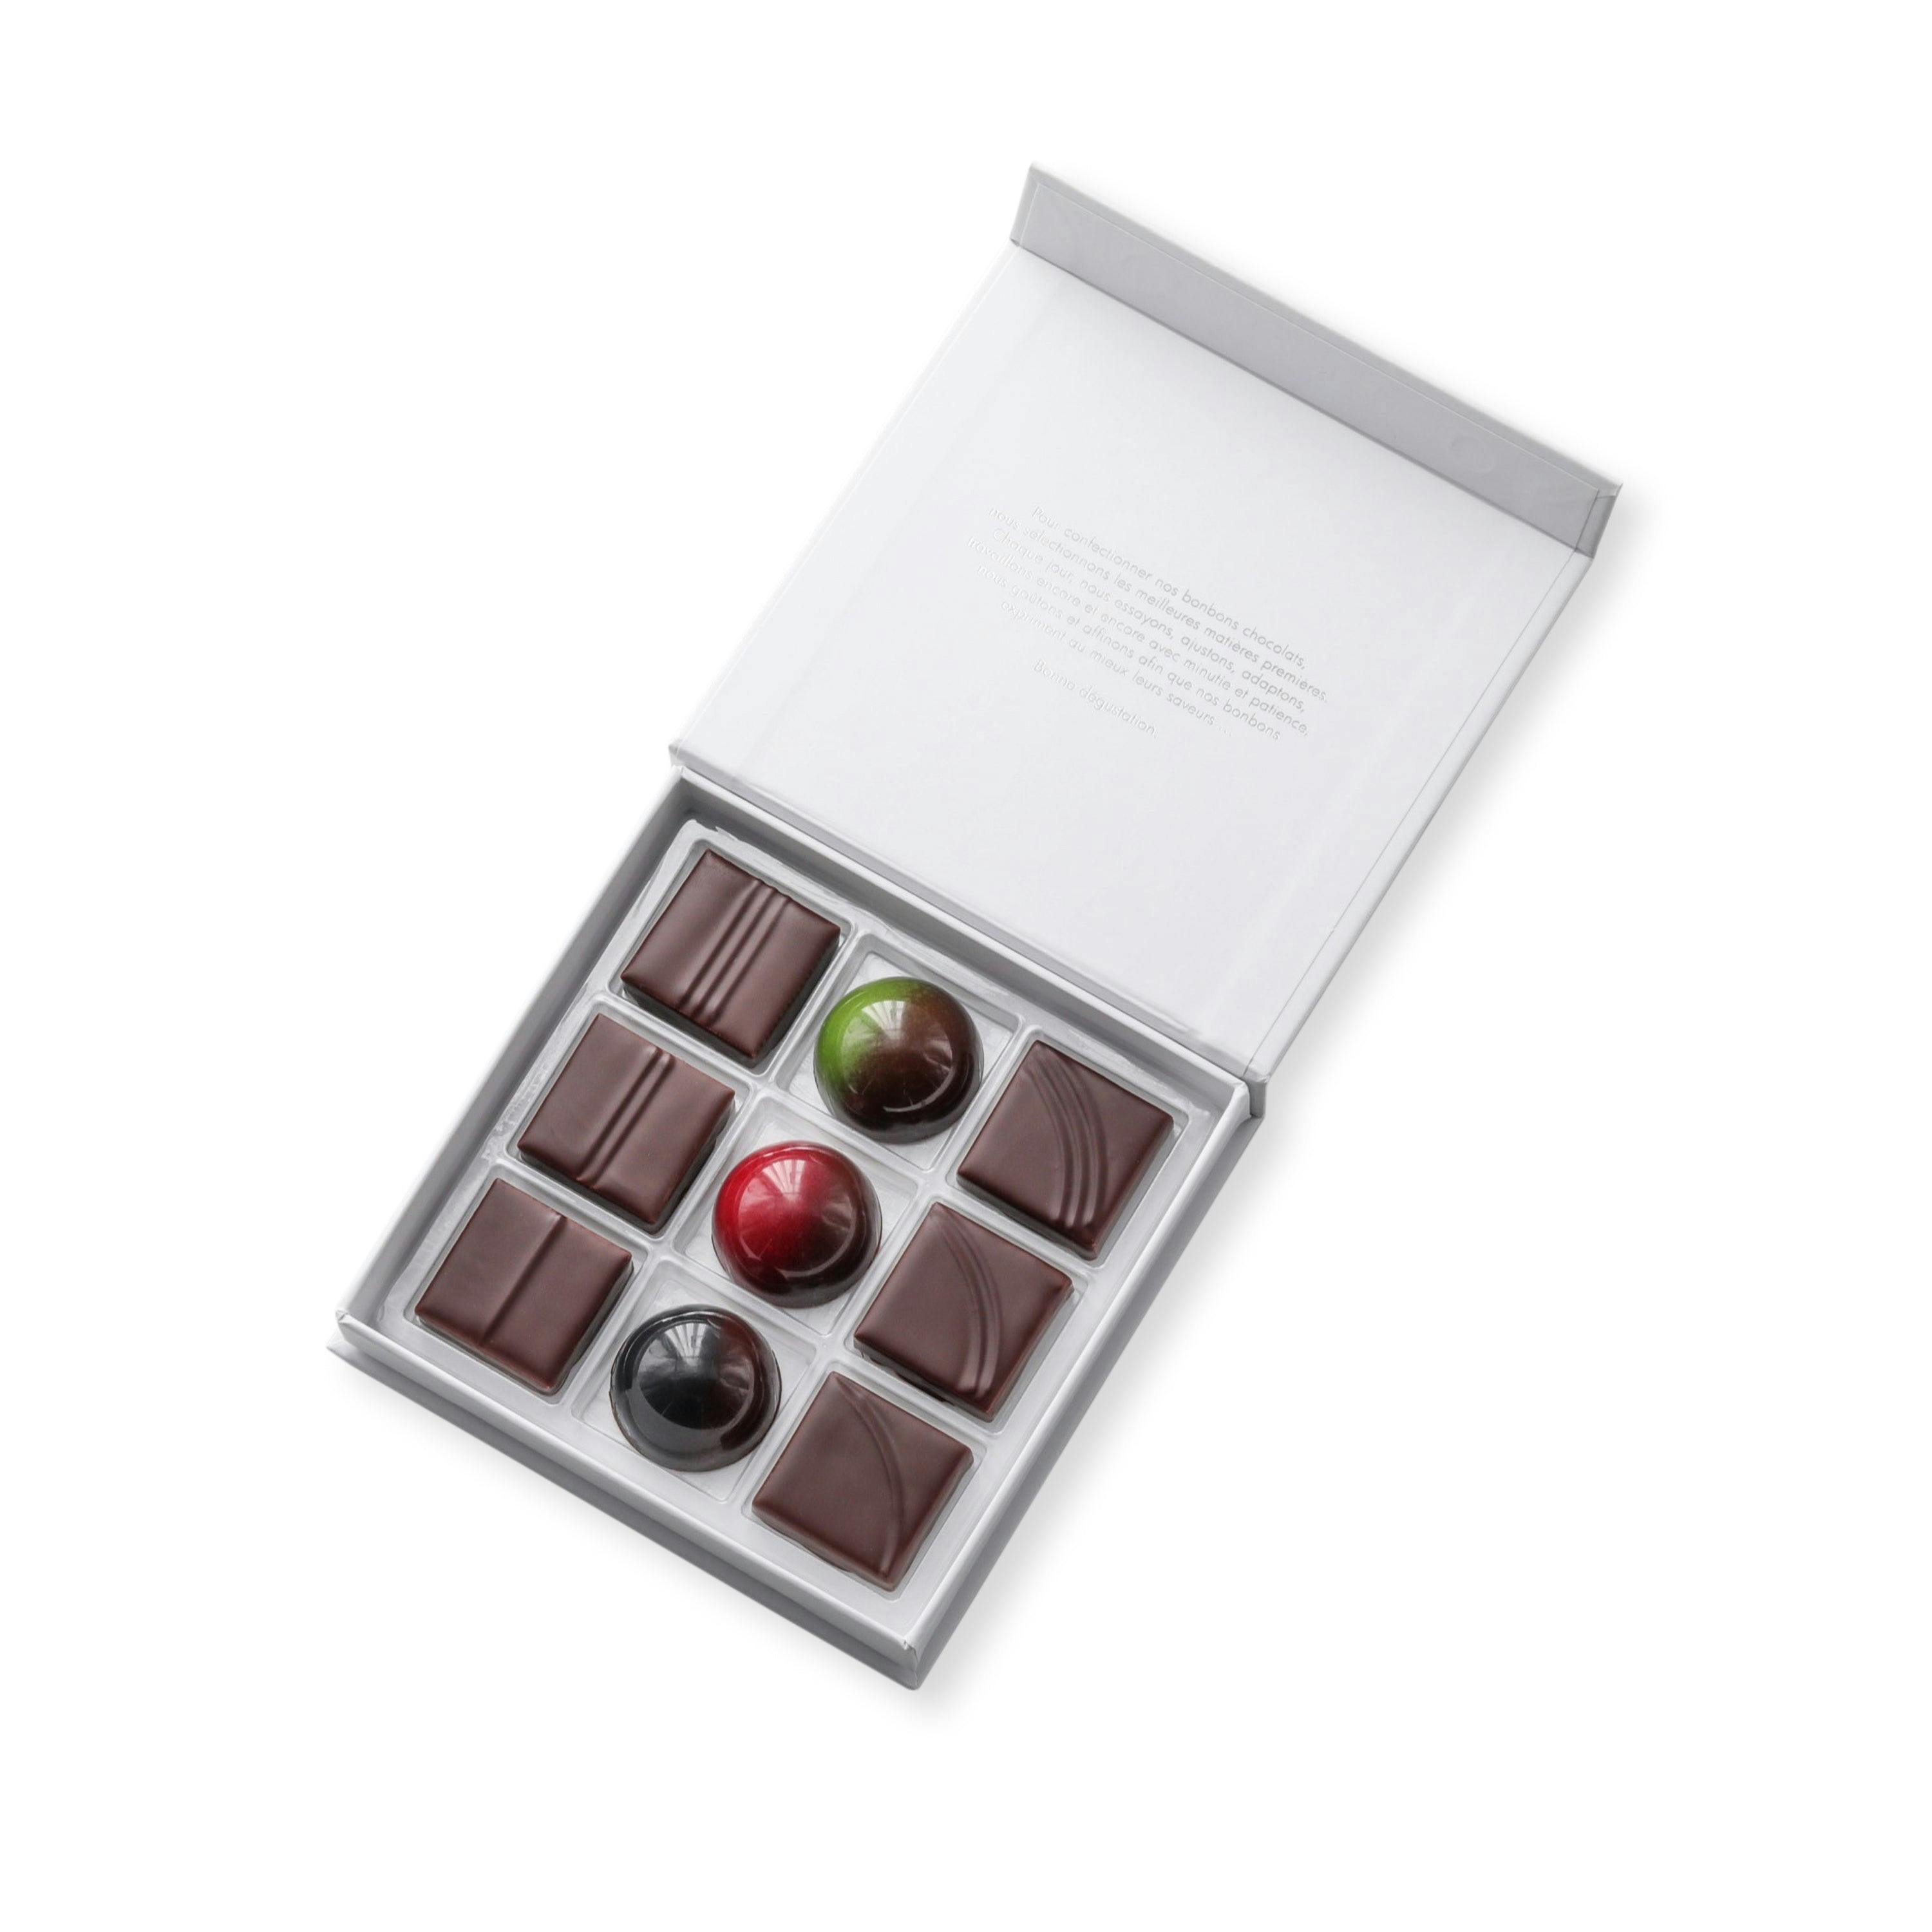 Coffret Sélection du chef assortiment 9 chocolats - Vincent Vallée world champion chocolatier